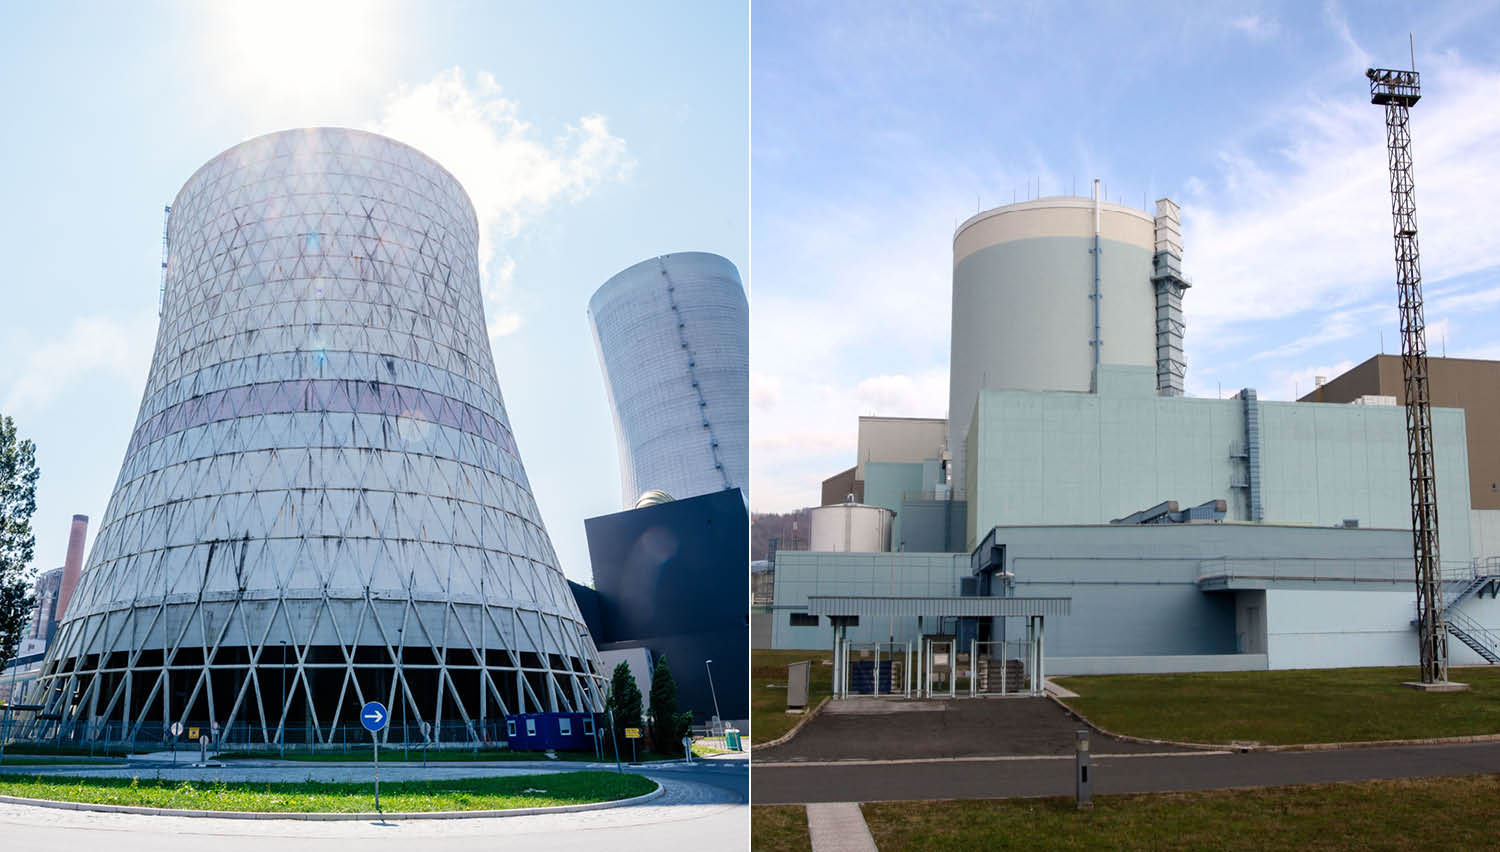 Slovenska energetika v letu 2018: remont v JEK in TEŠ 6